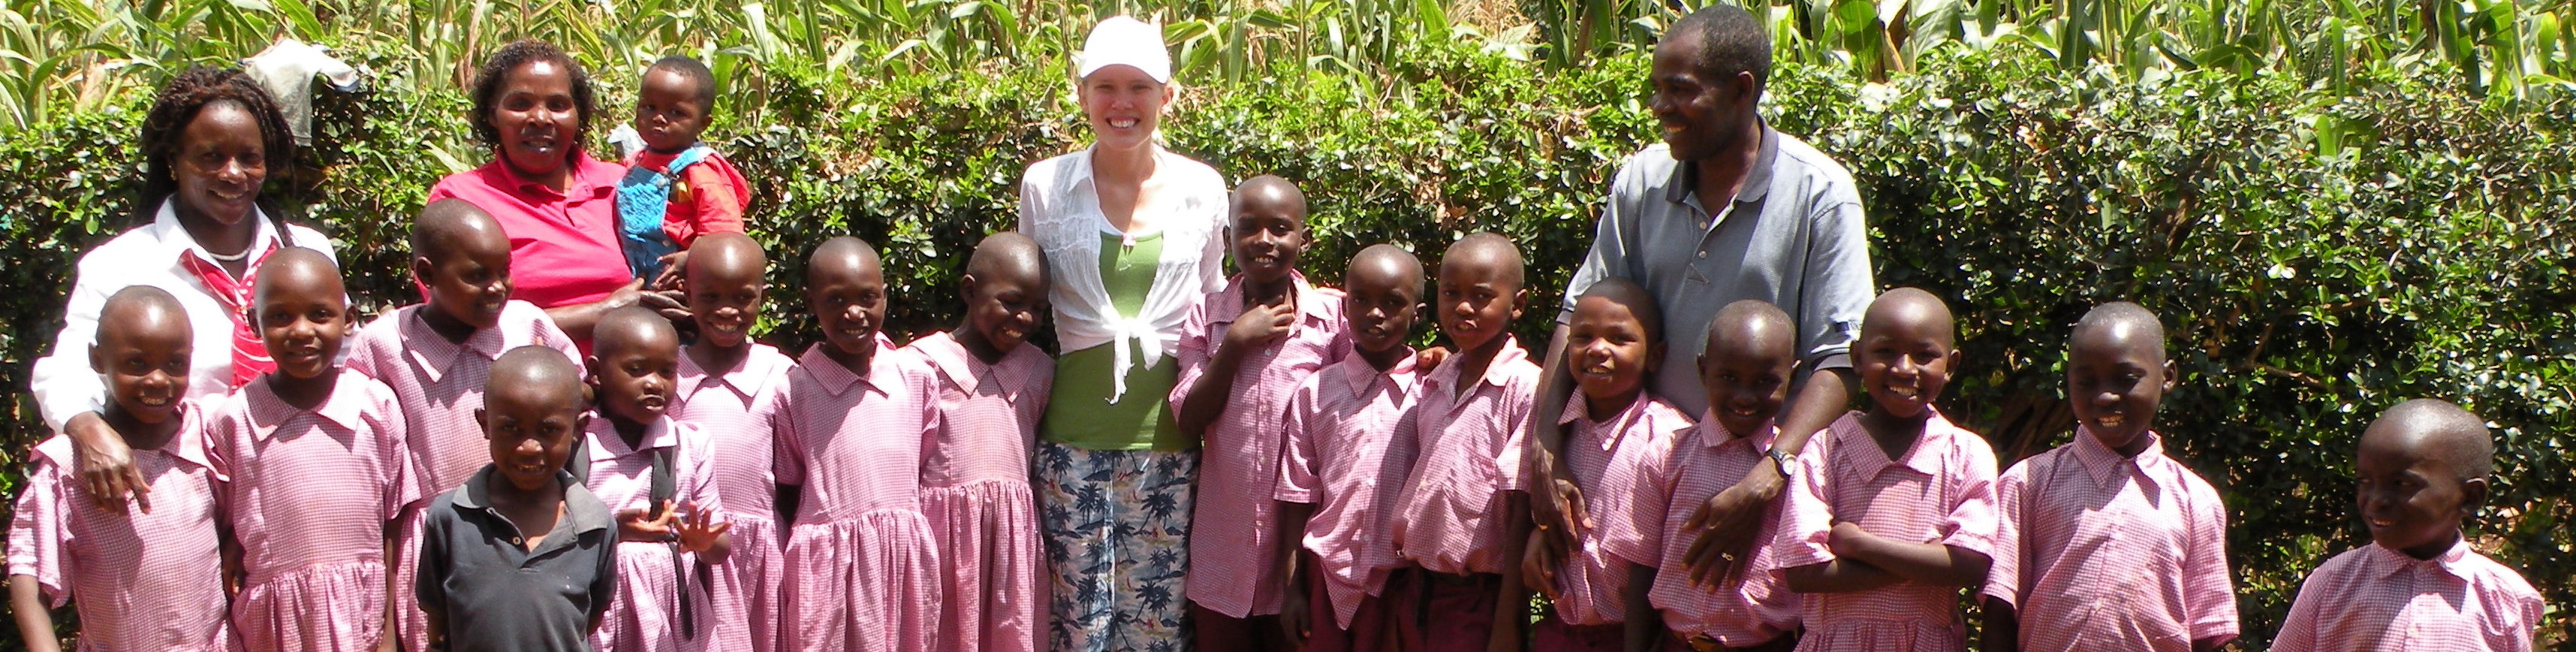 Katie in Kenya